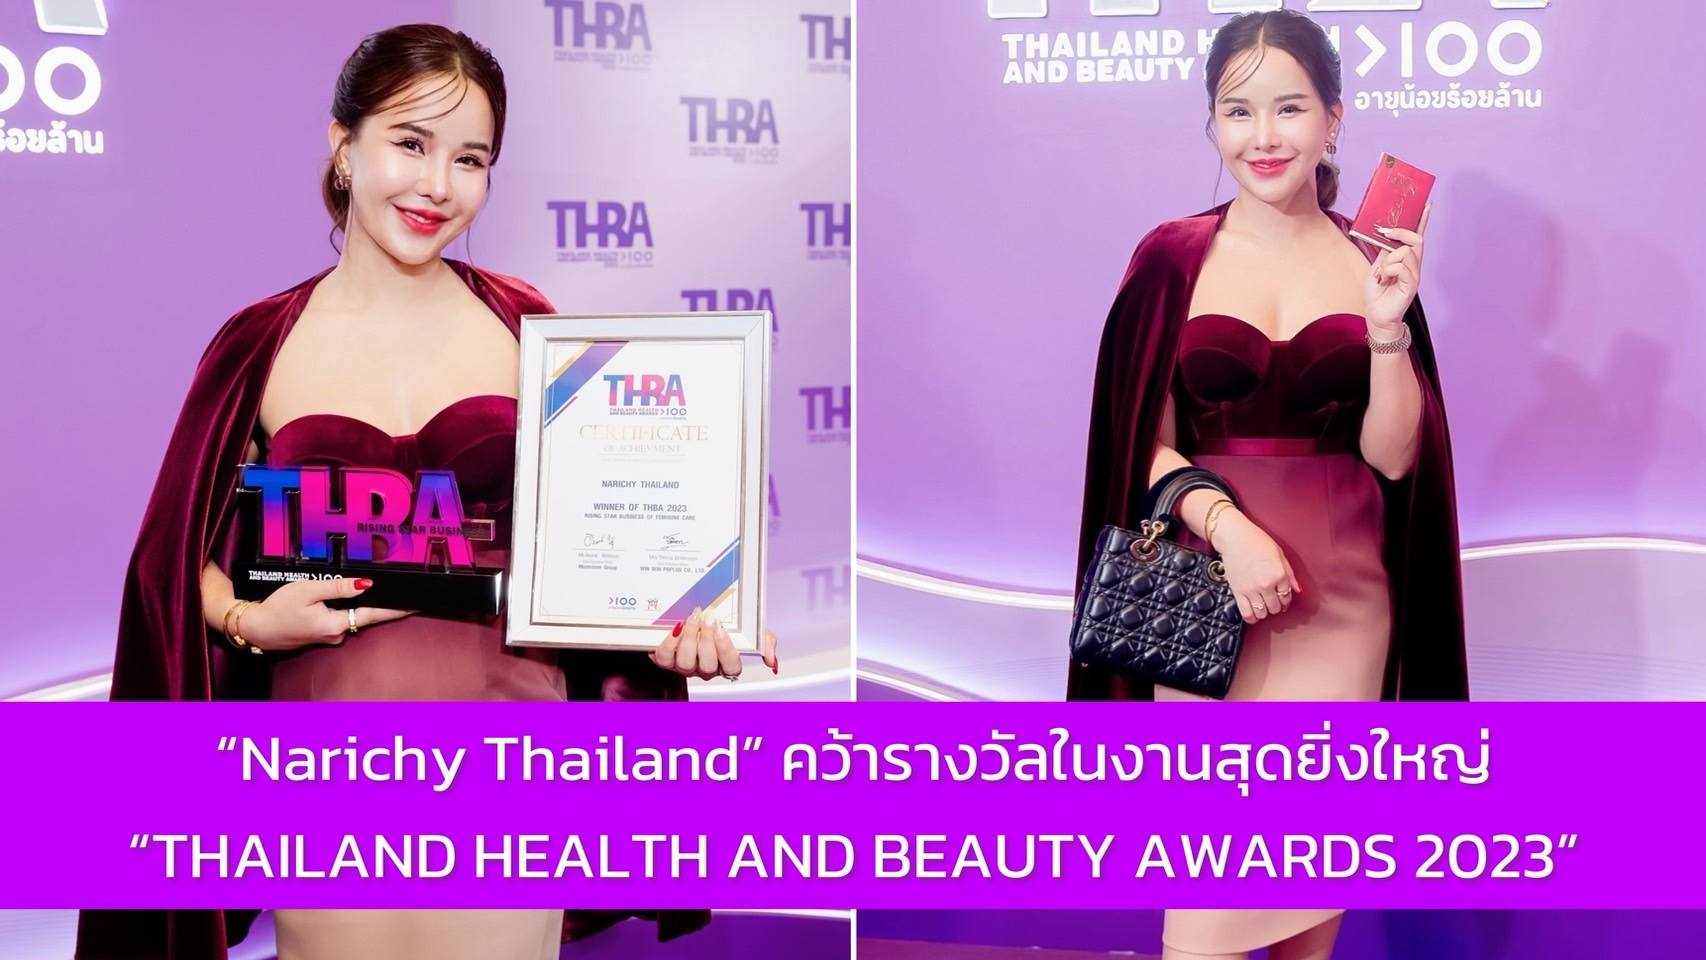 การันตีคุณภาพยืนหนึ่ง! CEO แบรนด์ Narichy Thailand คว้ารางวัลในงานประกาศรางวัลสุดยิ่งใหญ่ “THAILAND HEALTH AND BEAUTY AWARDS 2023”